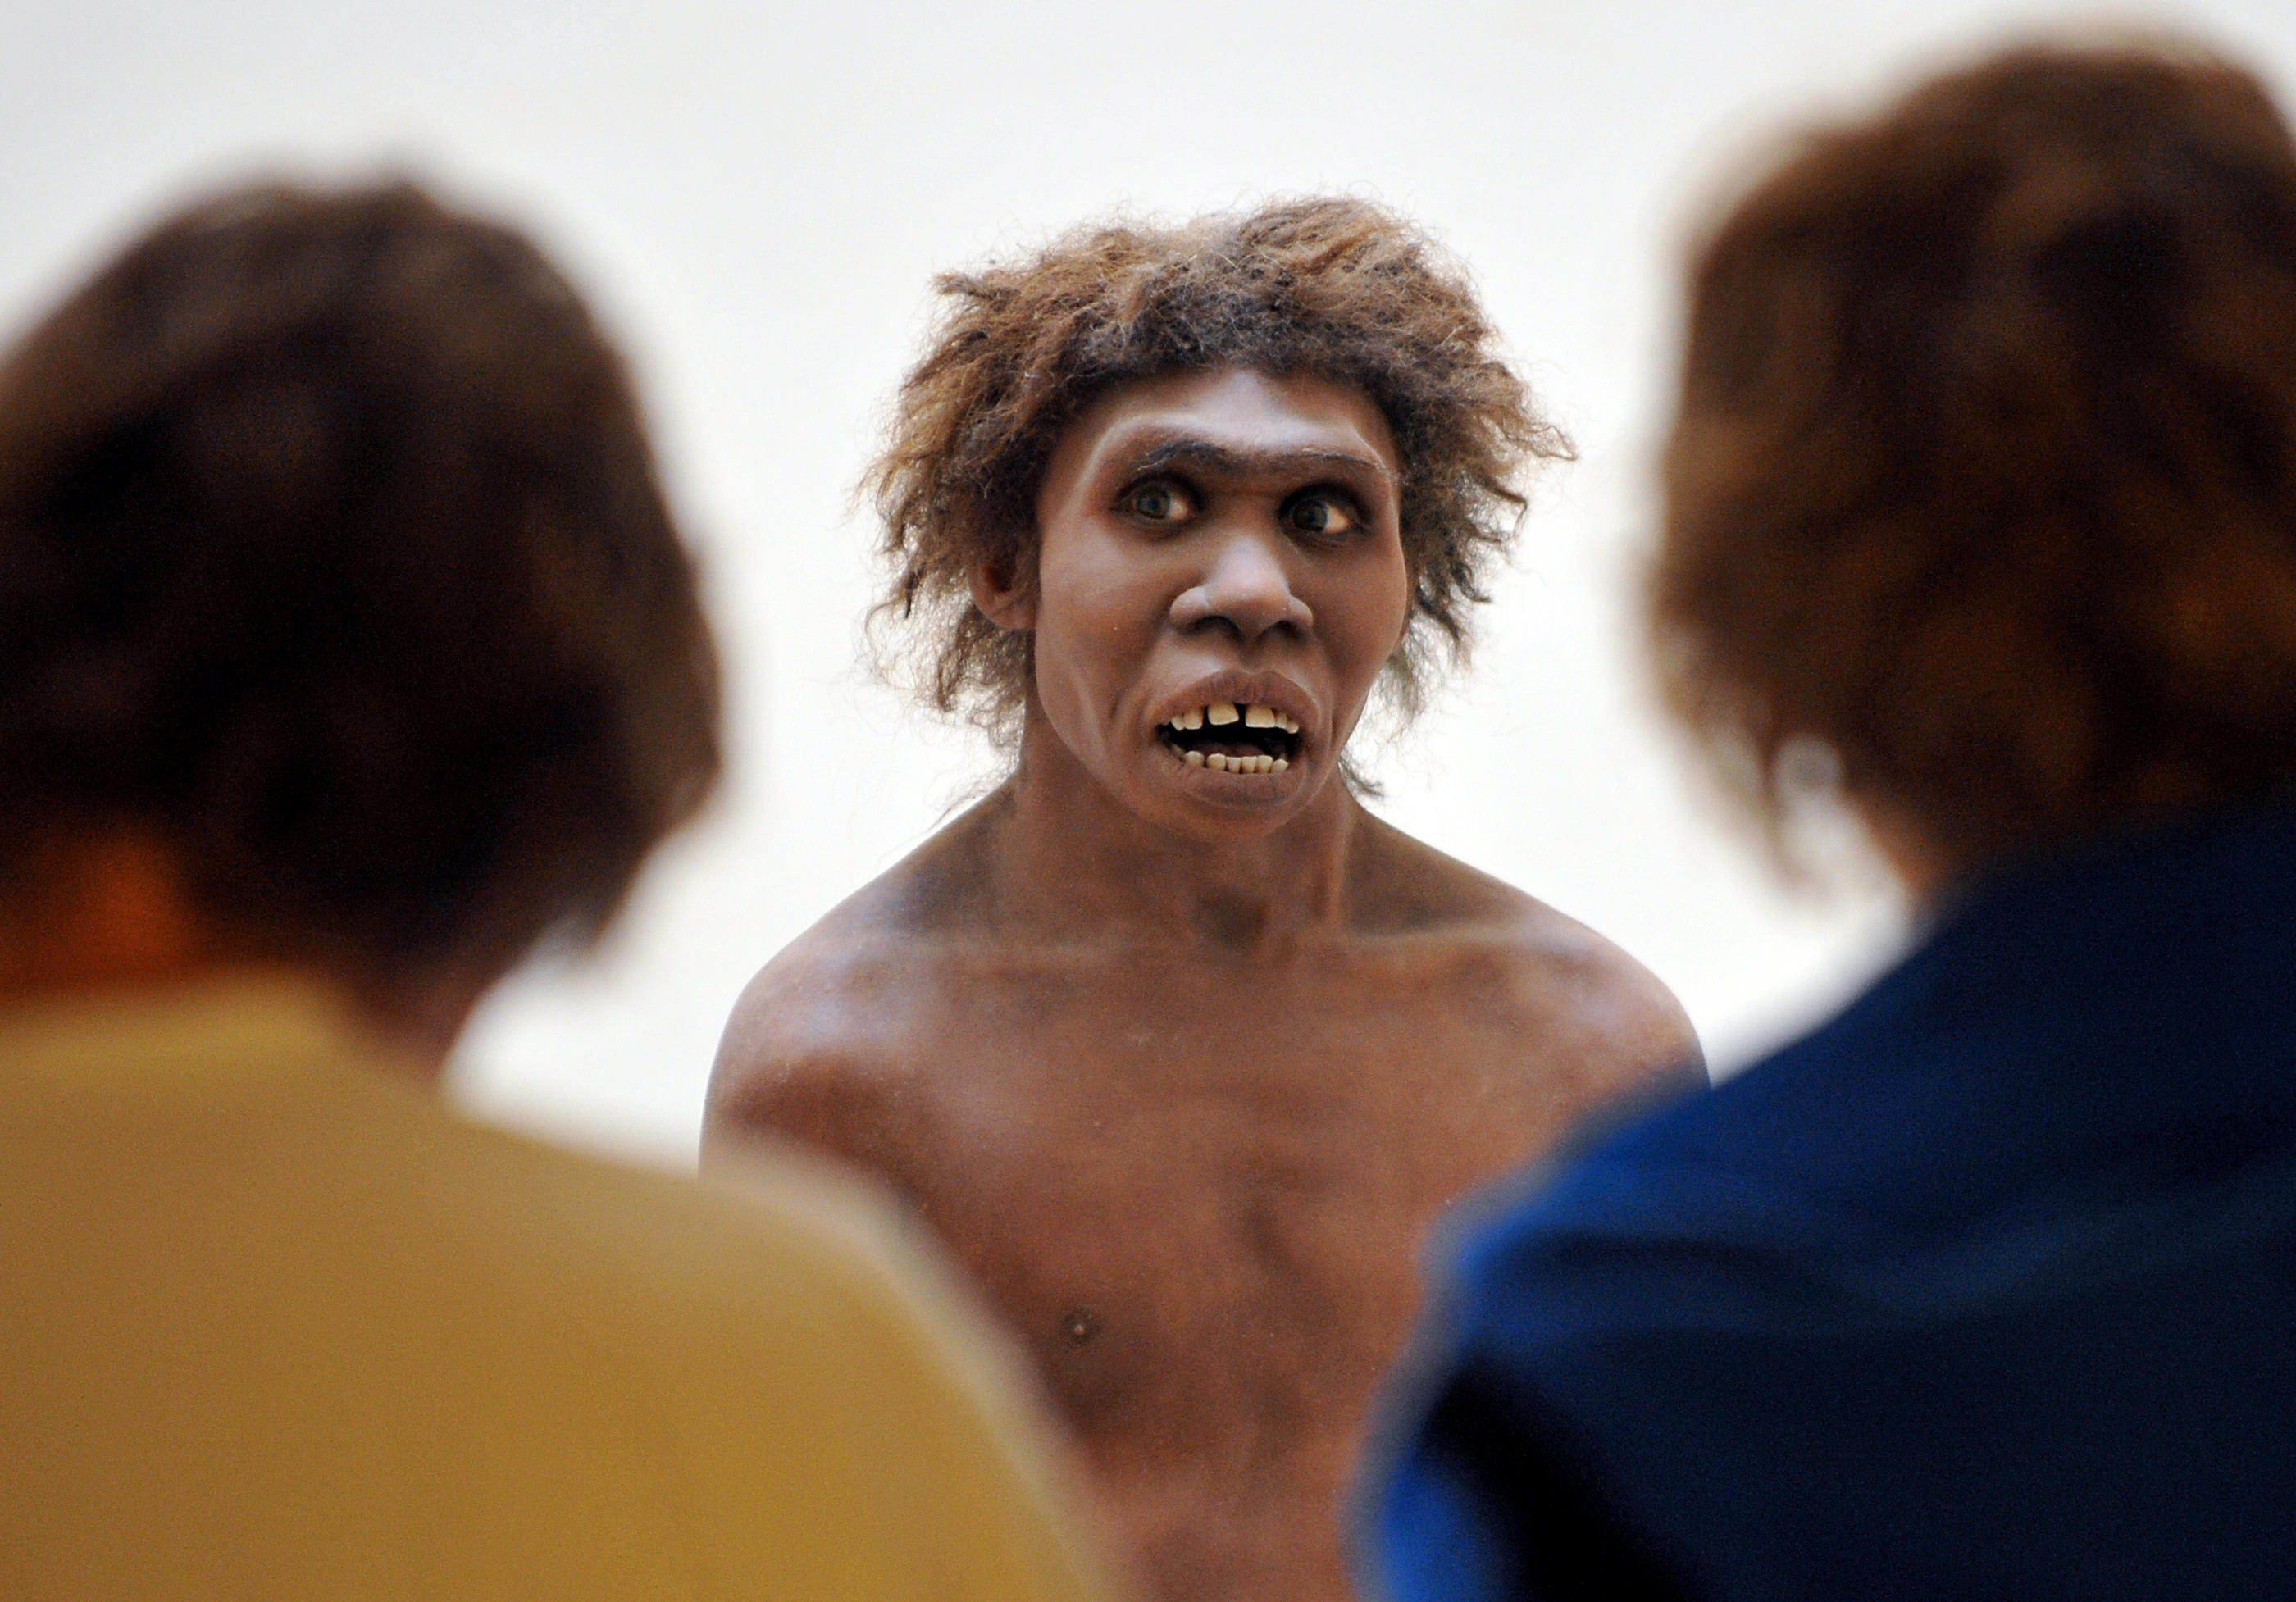 Des visiteurs observent la représentation d'un homme de Néandertal, en 2008 au musée national de la Préhistoire des Eyzies-de-Tayac (Dordogne), près de la grotte de Lascaux. AFP/Pierre Andrieu